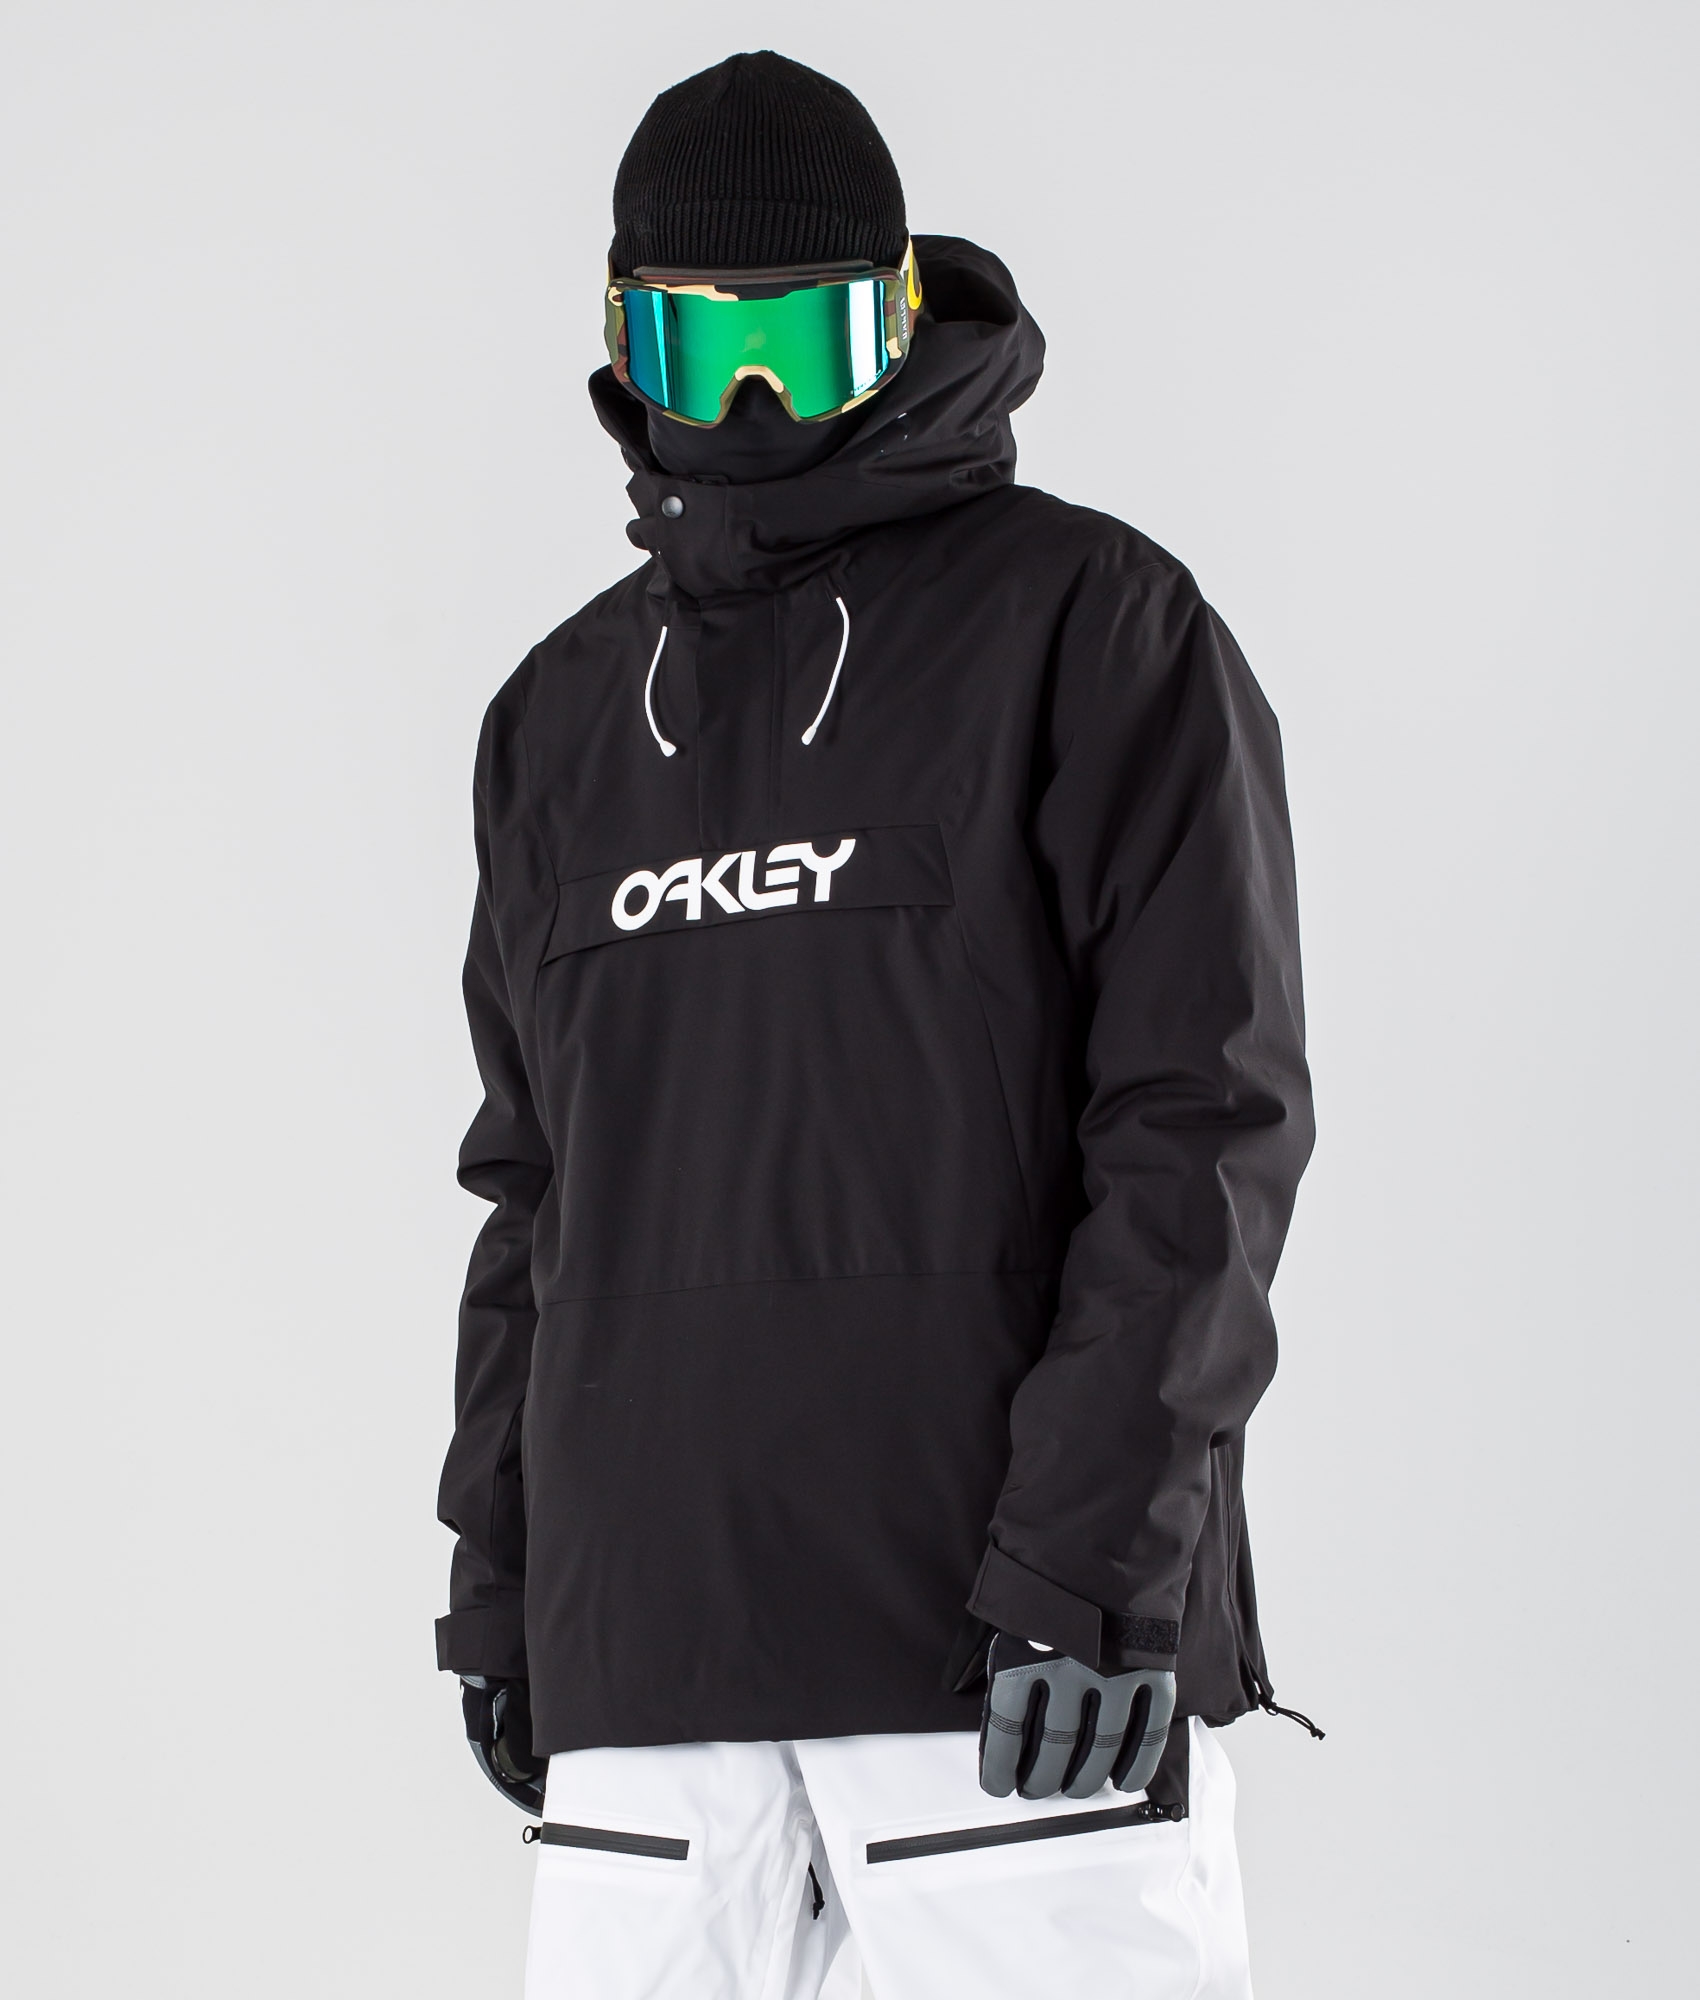 oakley blackout jacket